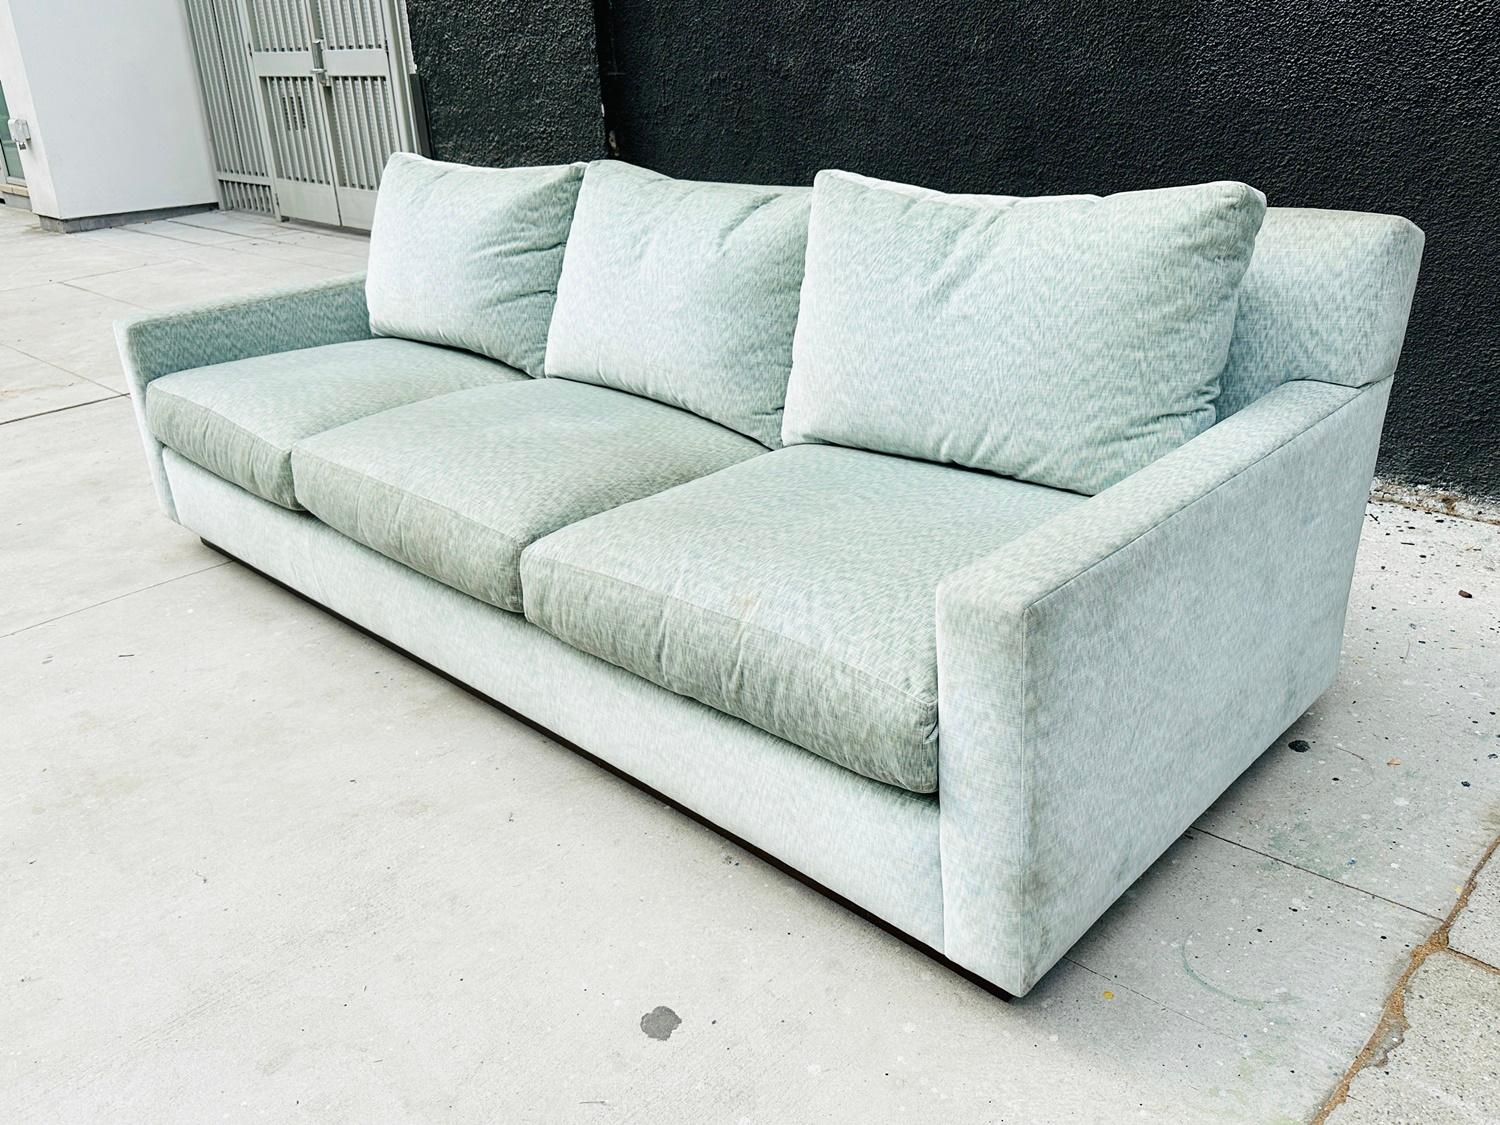 Wir stellen das exquisite Dreisitzer-Sofa mit Nussbaumsockel von A. Rudin vor, das in den eleganten 1990er Jahren in den USA hergestellt wurde. Dieses zeitlose Möbelstück strahlt Raffinesse und Grandeur aus und ist die perfekte Ergänzung für jeden